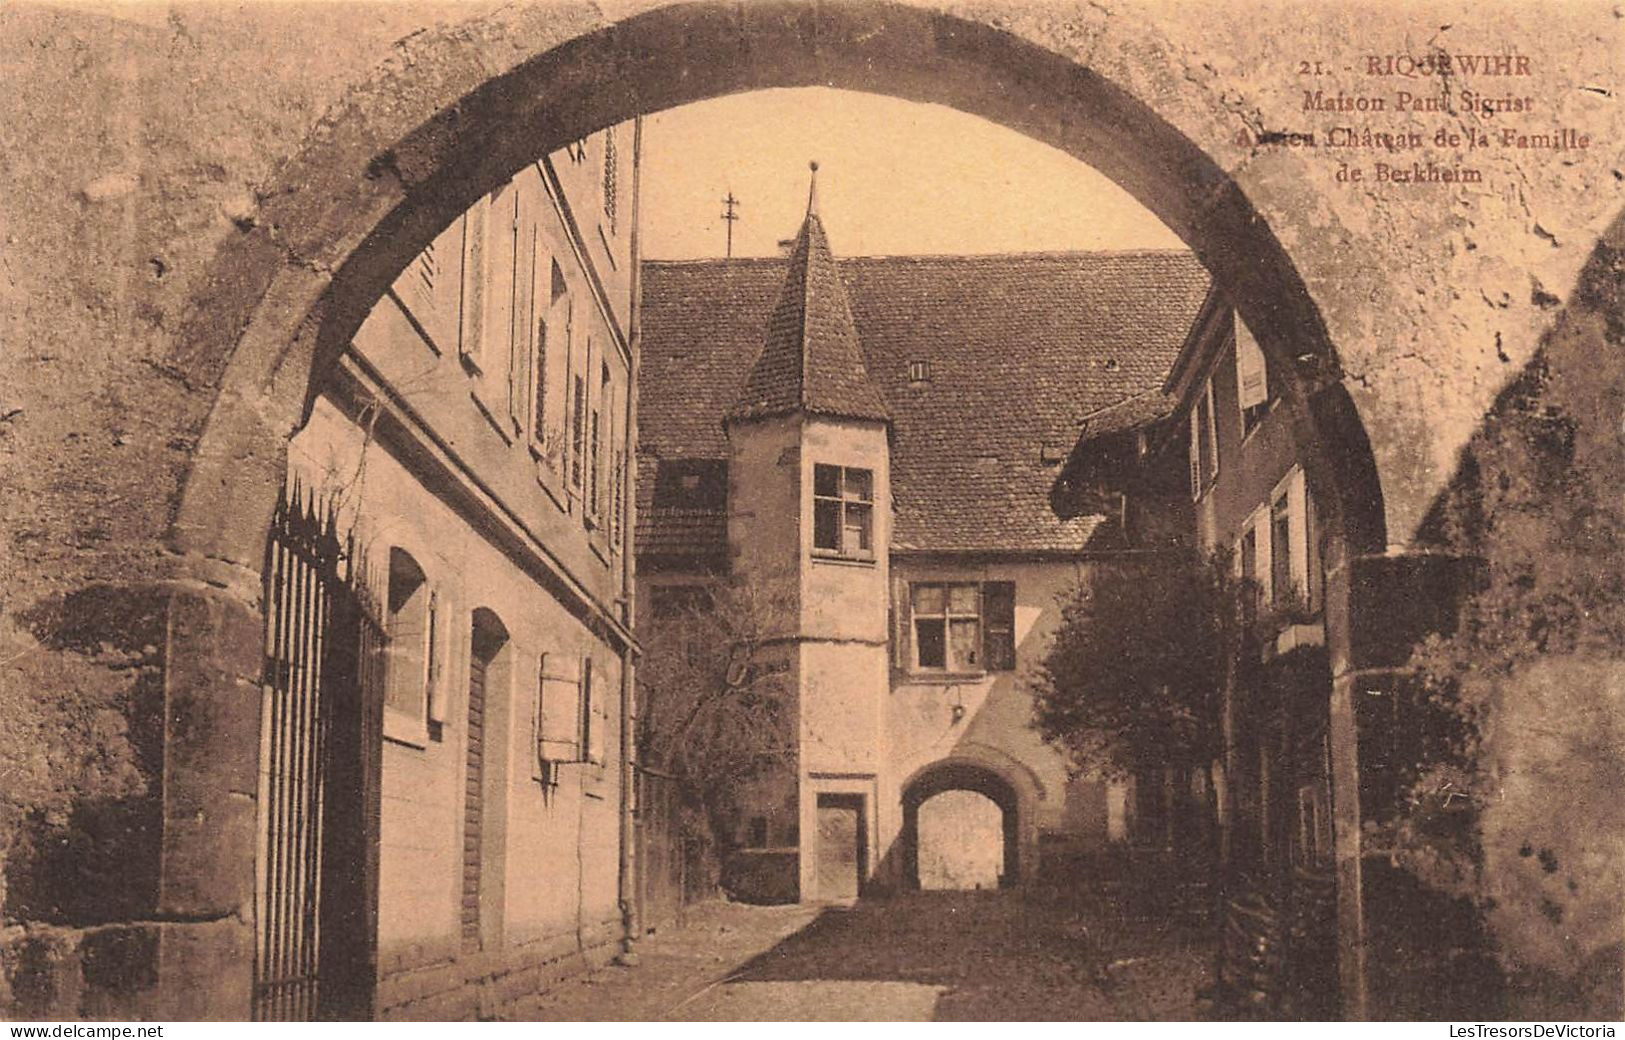 FRANCE - Riquewihr - Maison Paul Sigrist - Ancien Château De La Famille De Berkheim - Carte Postale Ancienne - Riquewihr